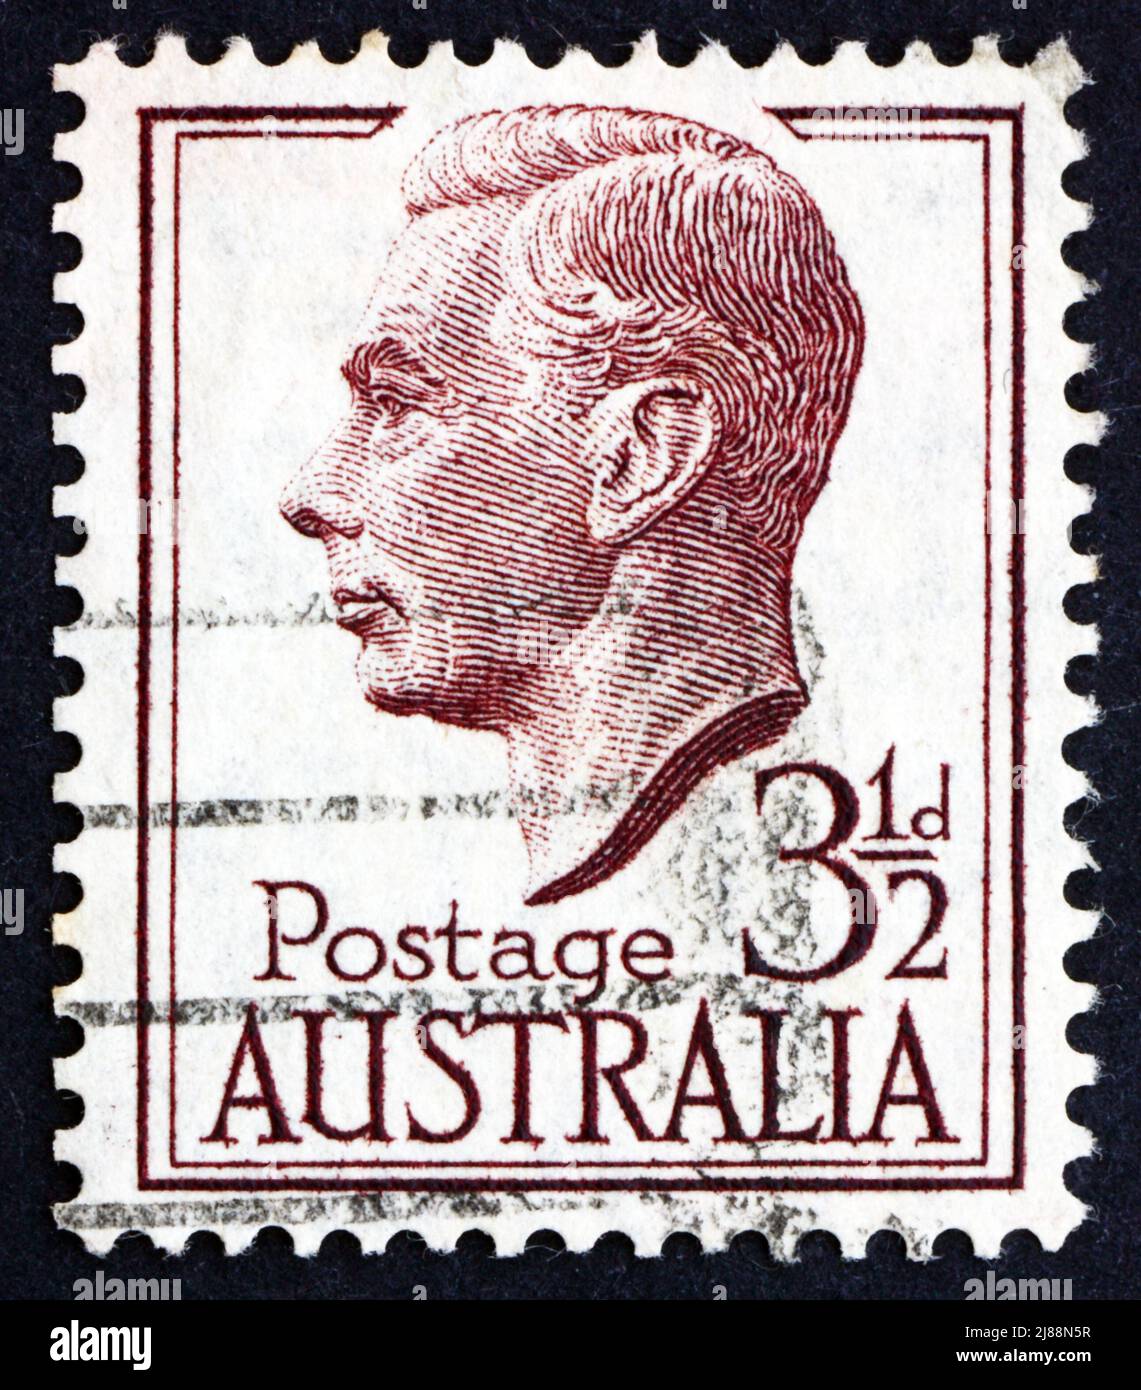 AUSTRALIEN - UM 1951: Eine in Australien gedruckte Briefmarke zeigt George VI, König des Vereinigten Königreichs und die Dominions des Britischen Commonwealth, CI Stockfoto